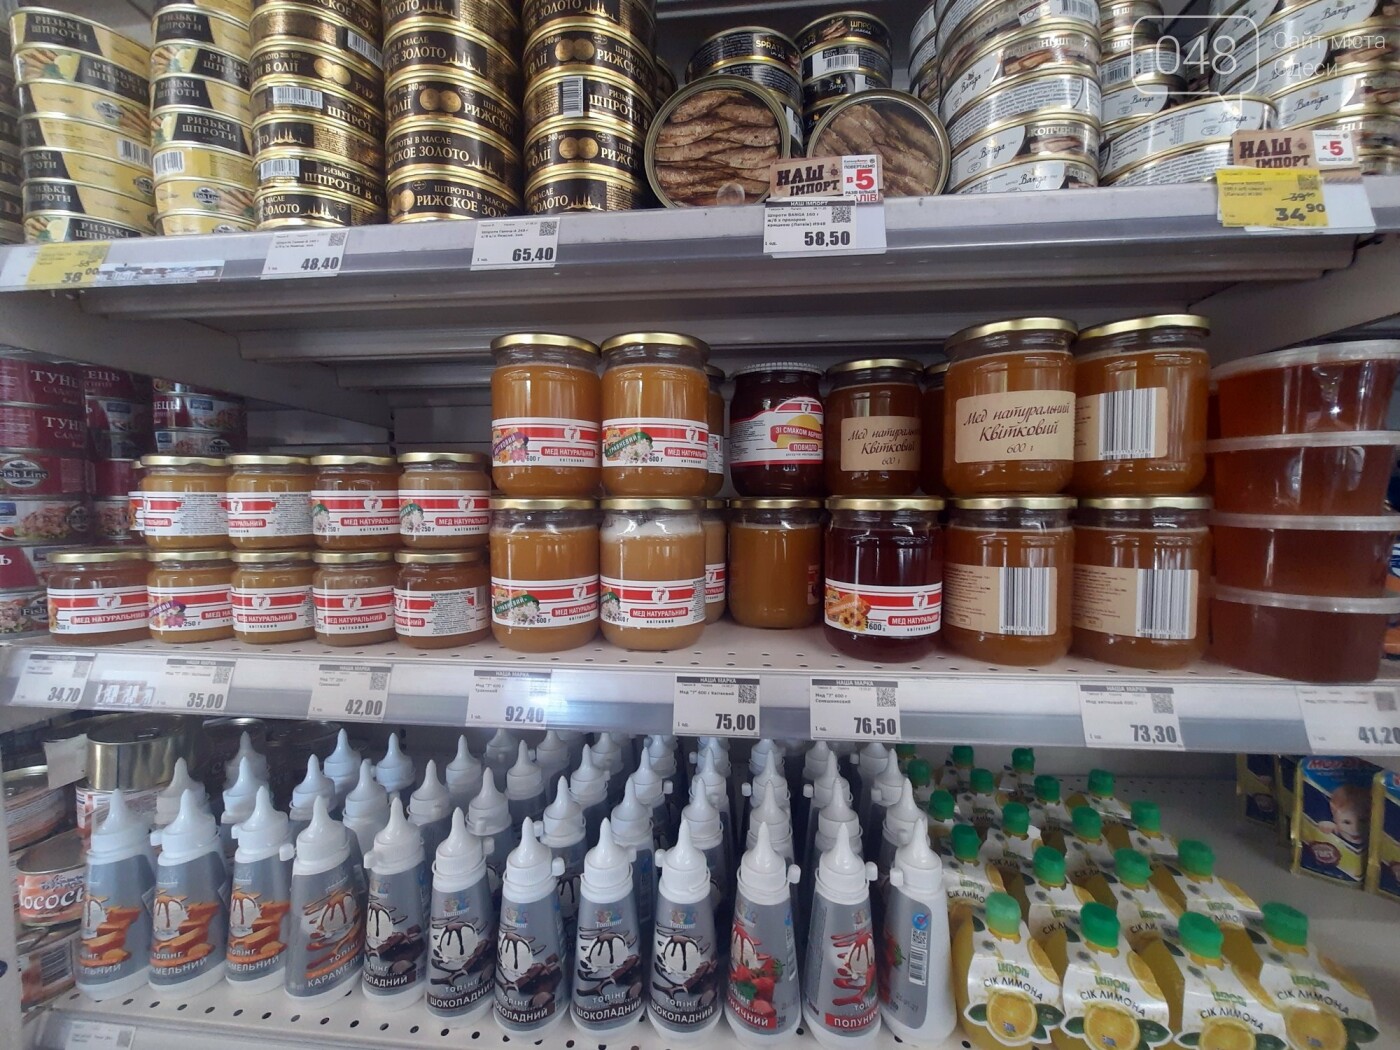 Сколько в одесских супермаркетах стоит мед в преддверии Спаса: обзор цен, - ФОТО